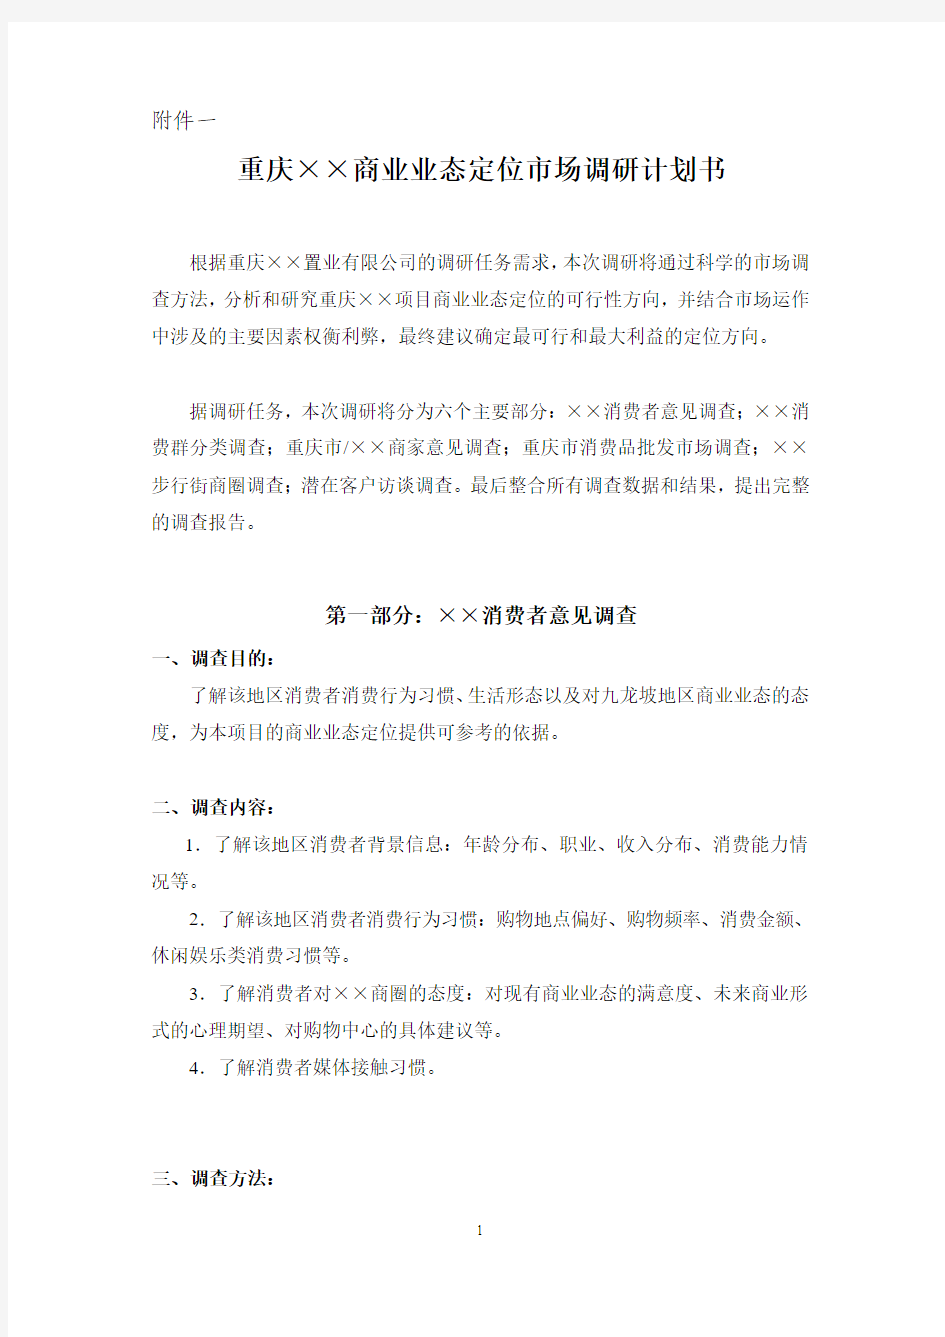 重庆商业业态定位市场调研计划书